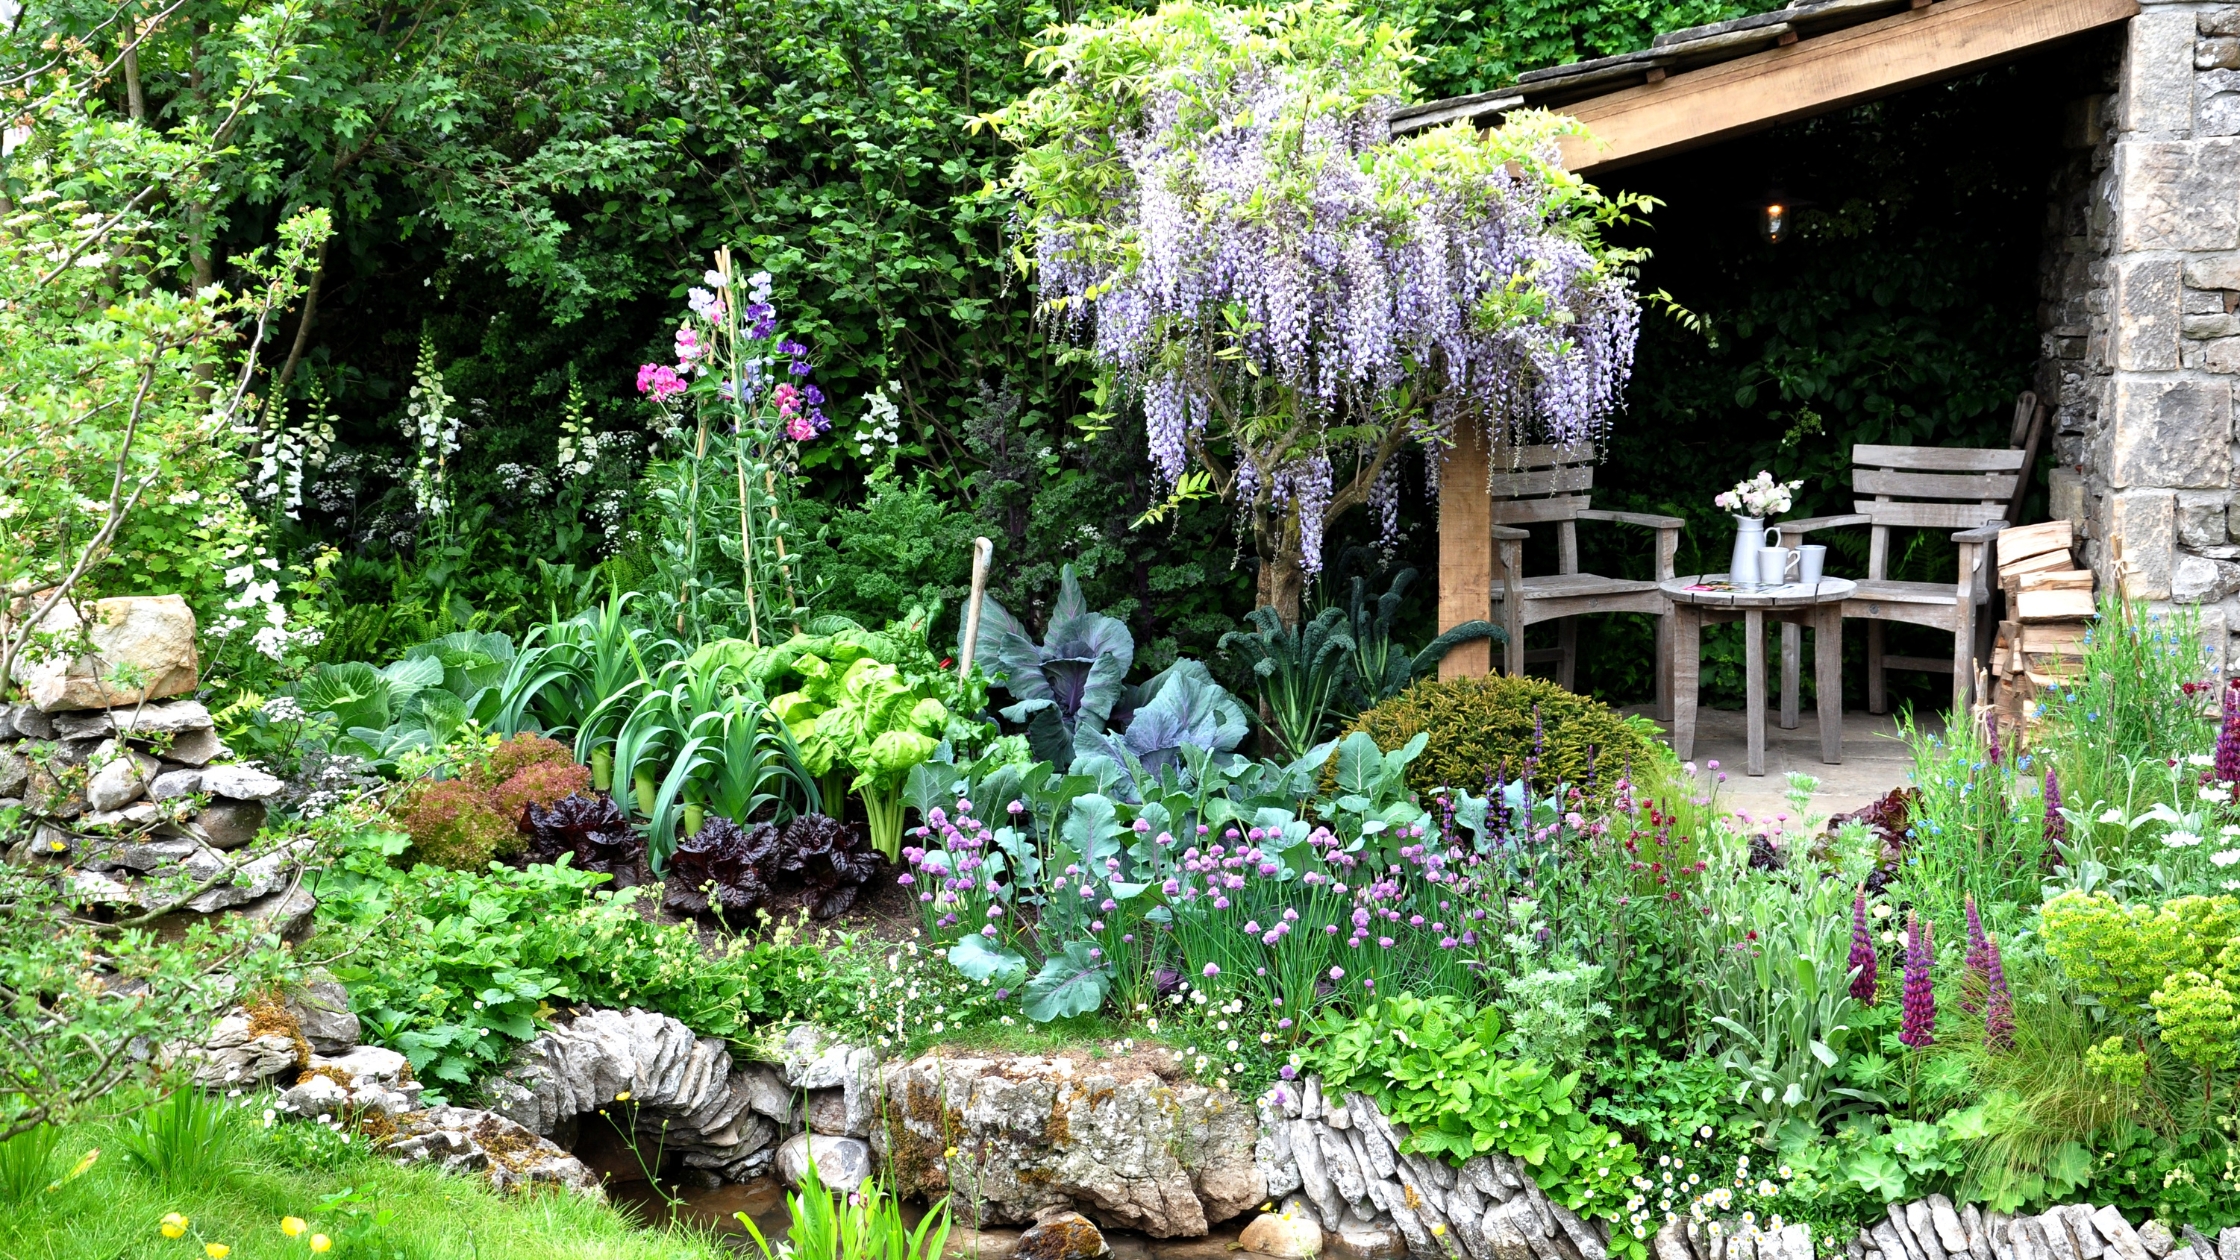 15+ Inspiring Garden Ideas to Transform Your Outdoor Space